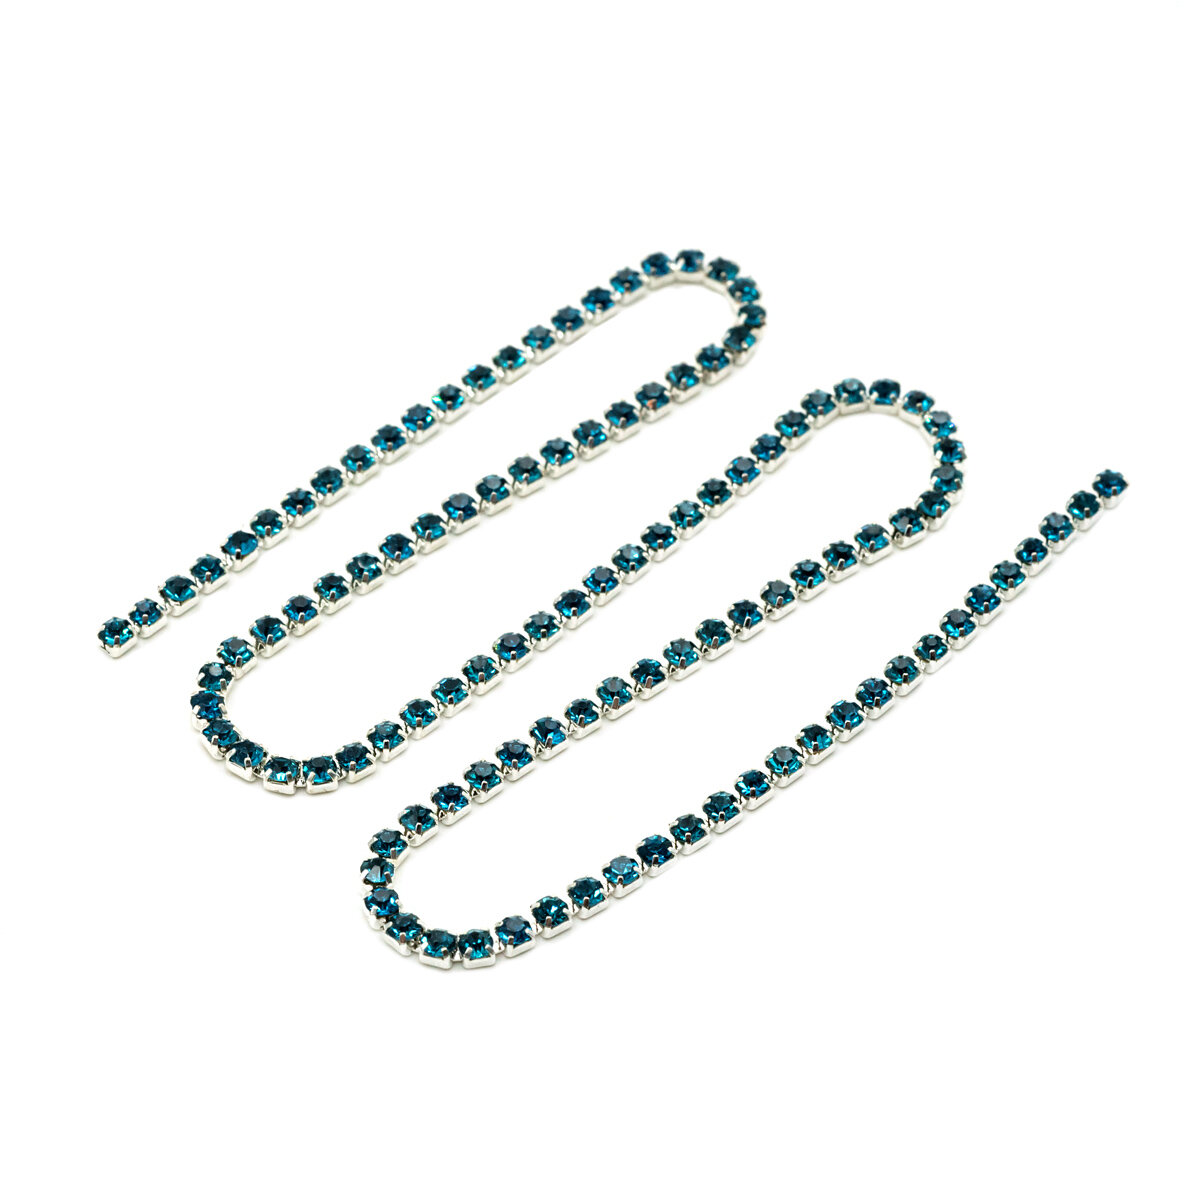 ЦС004СЦ2 Стразовые цепочки (серебро), лазурный, размер 2 мм, 30 см/упак